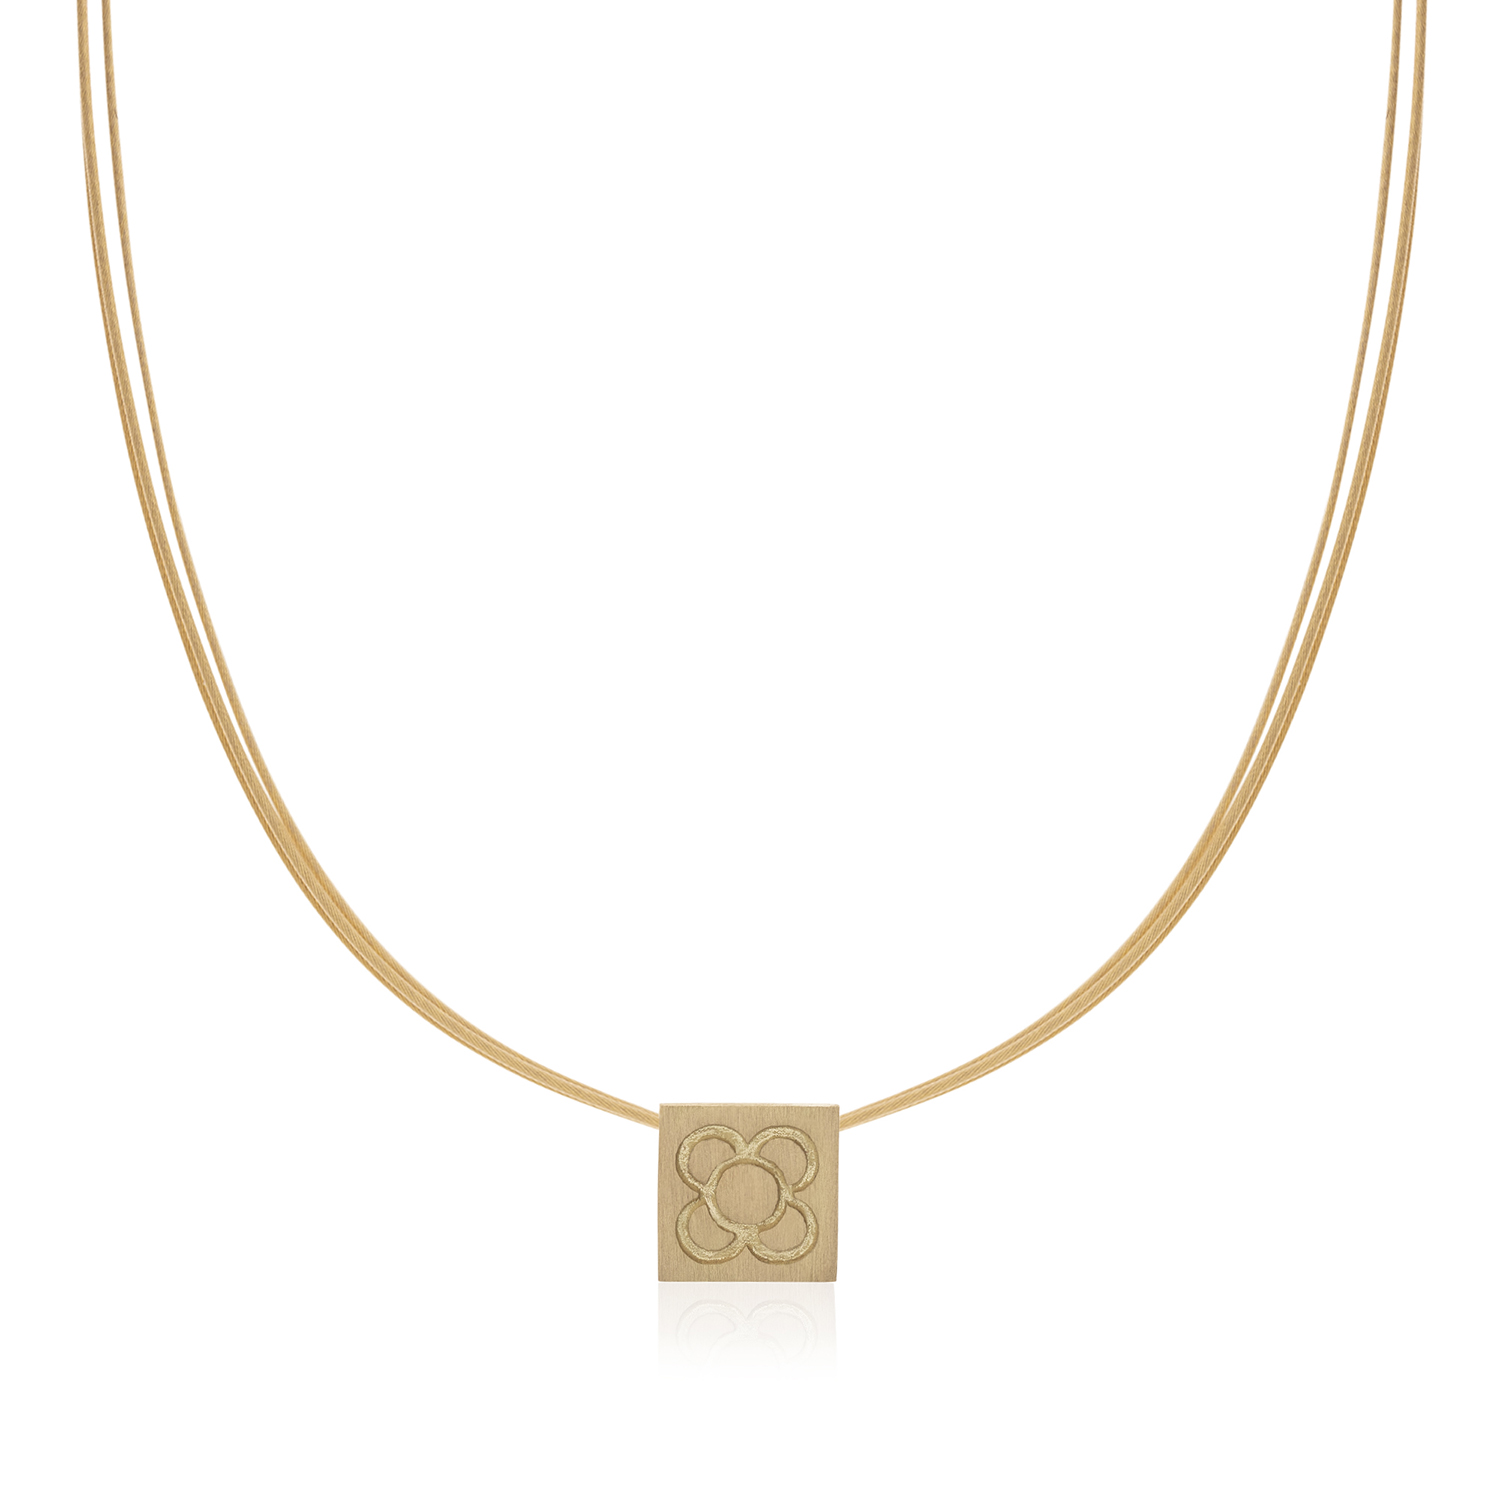 PANOT gold pendant